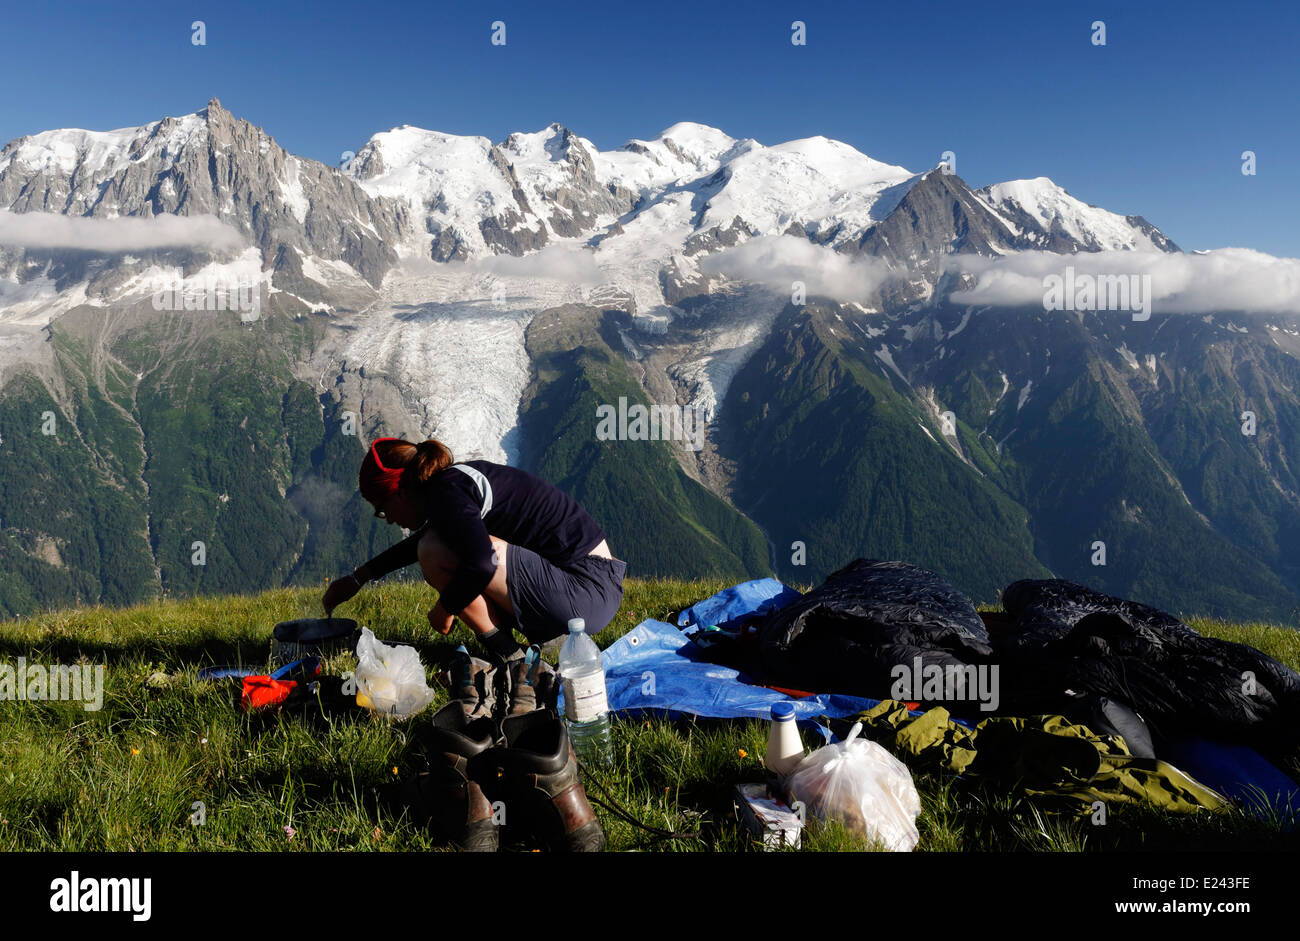 Une dame camping-la préparation des aliments sur le Brévent camping sauvage dans les Alpes françaises avec le massif du Mont Blanc au-delà Banque D'Images